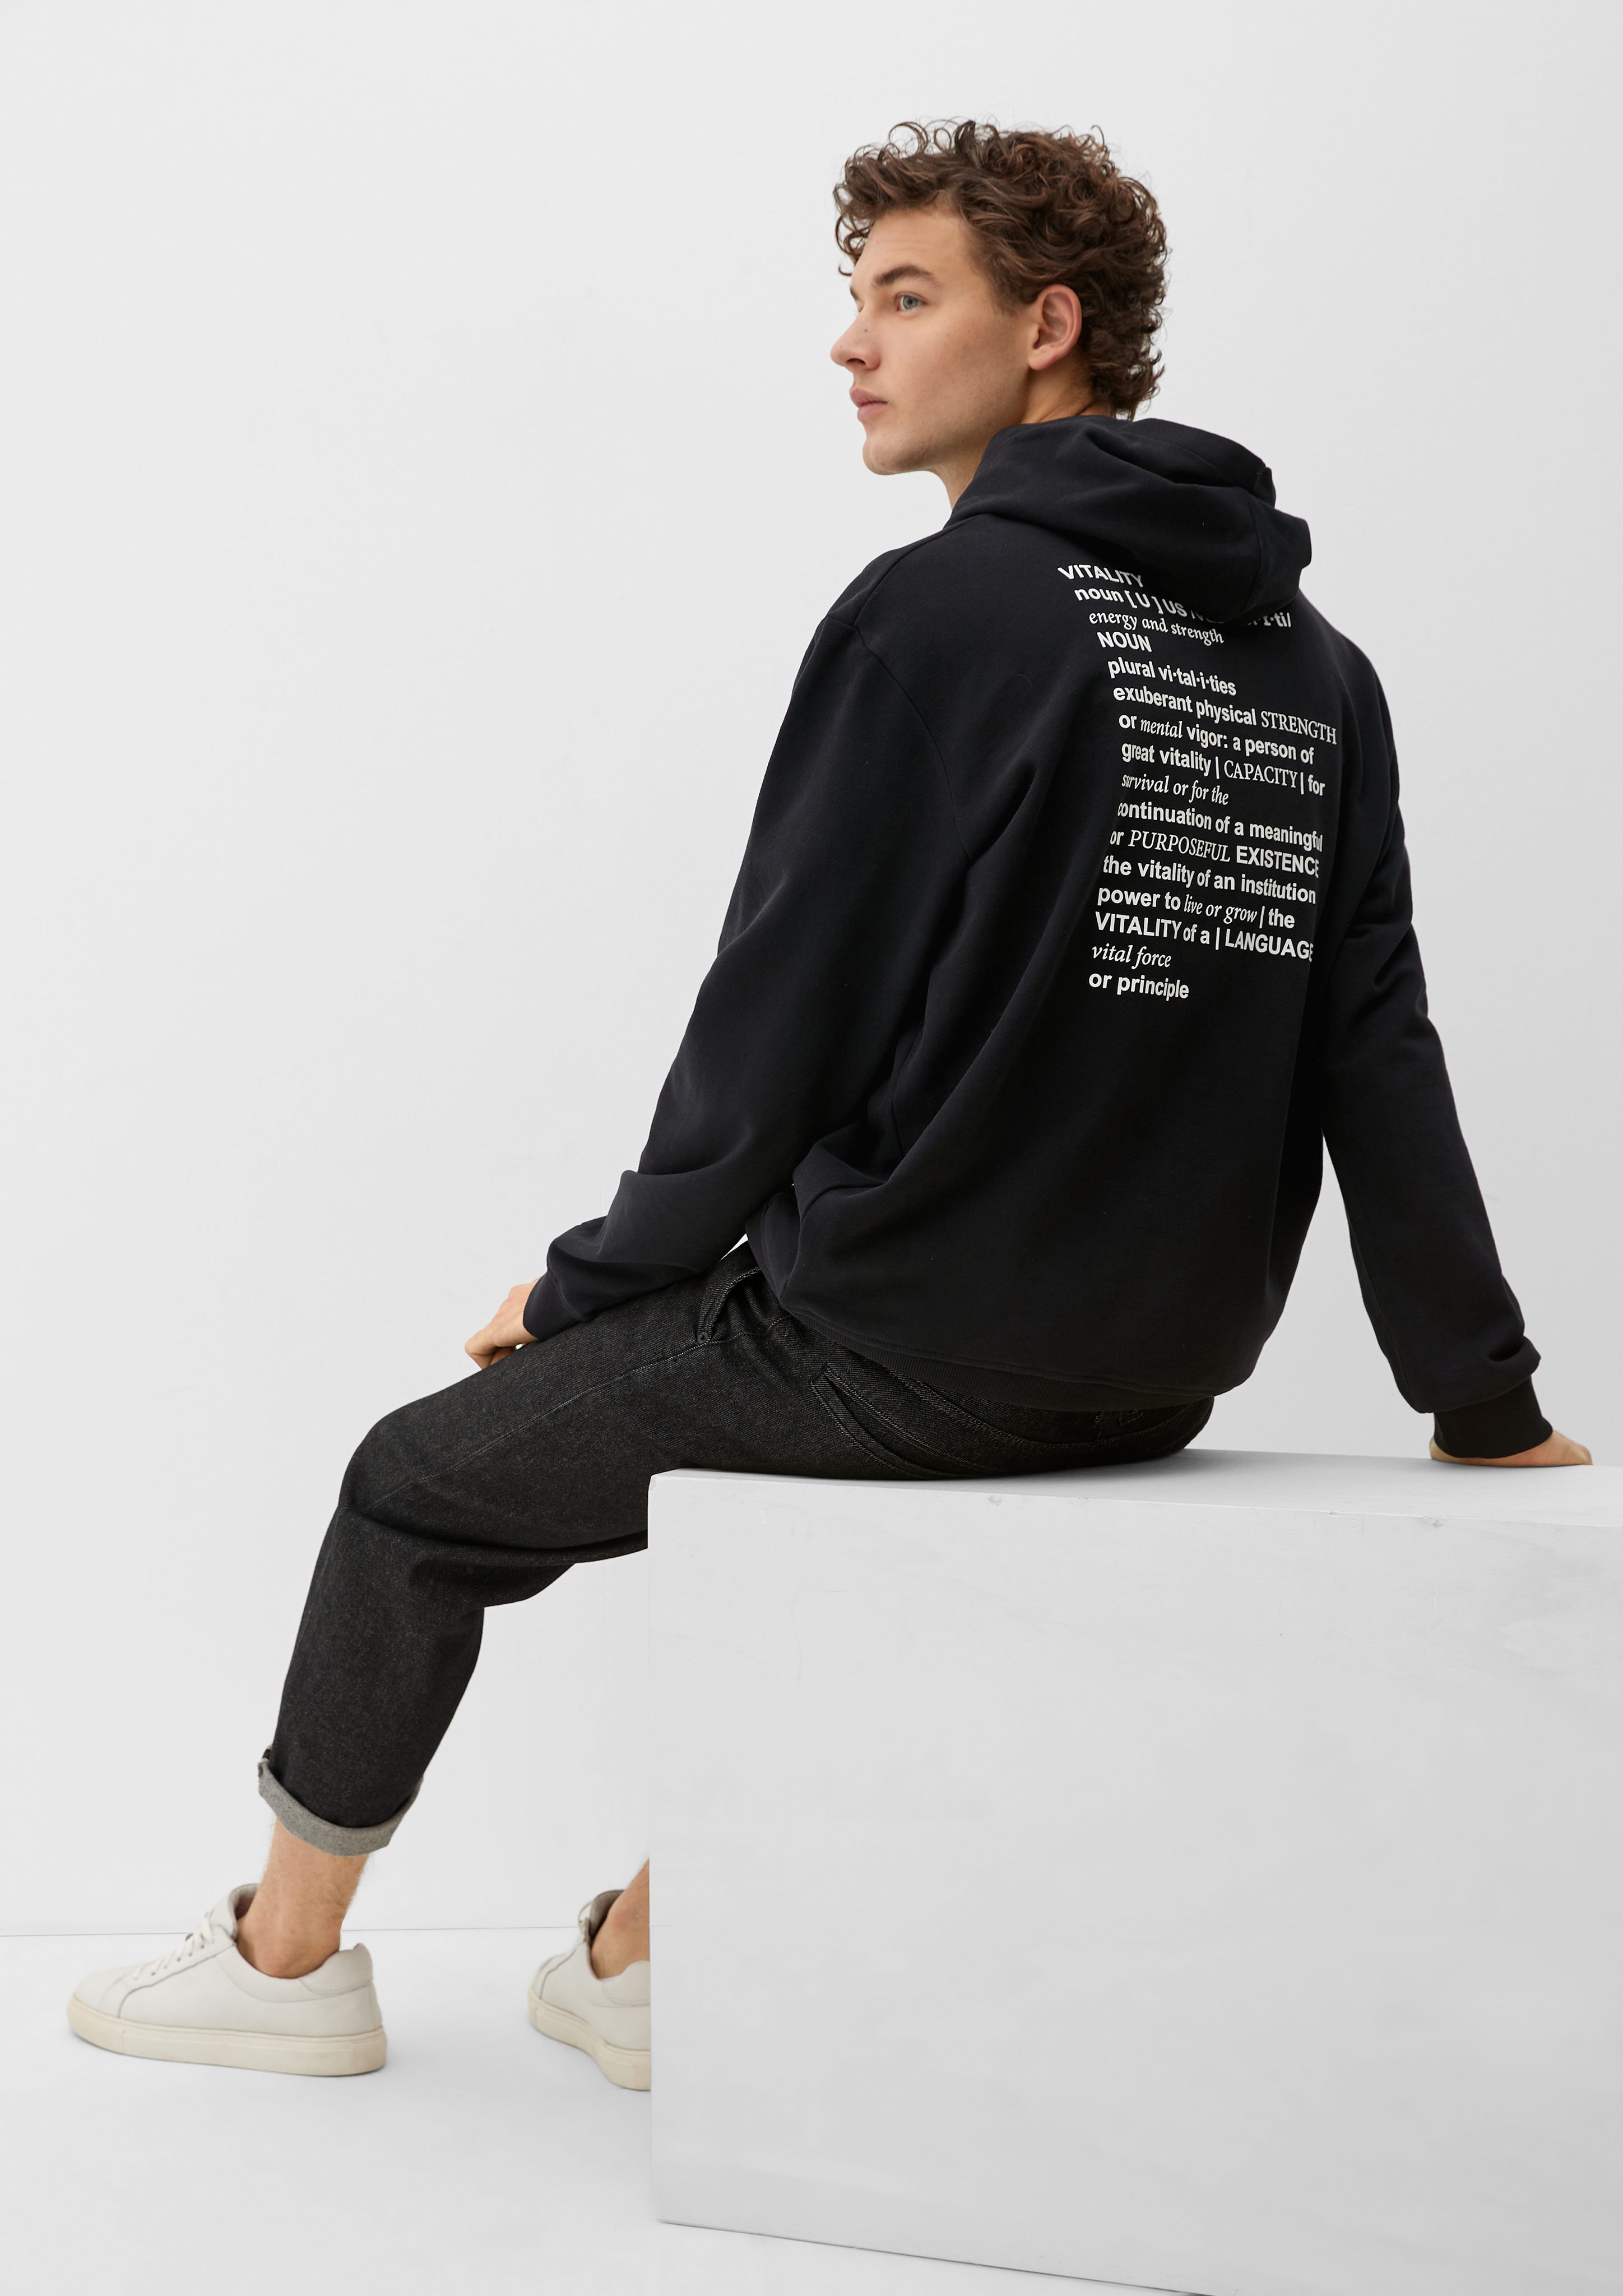 s.Oliver Sweatshirt Hoodie Blende Garment Print Artwork, mit schwarz gummiertem Dye